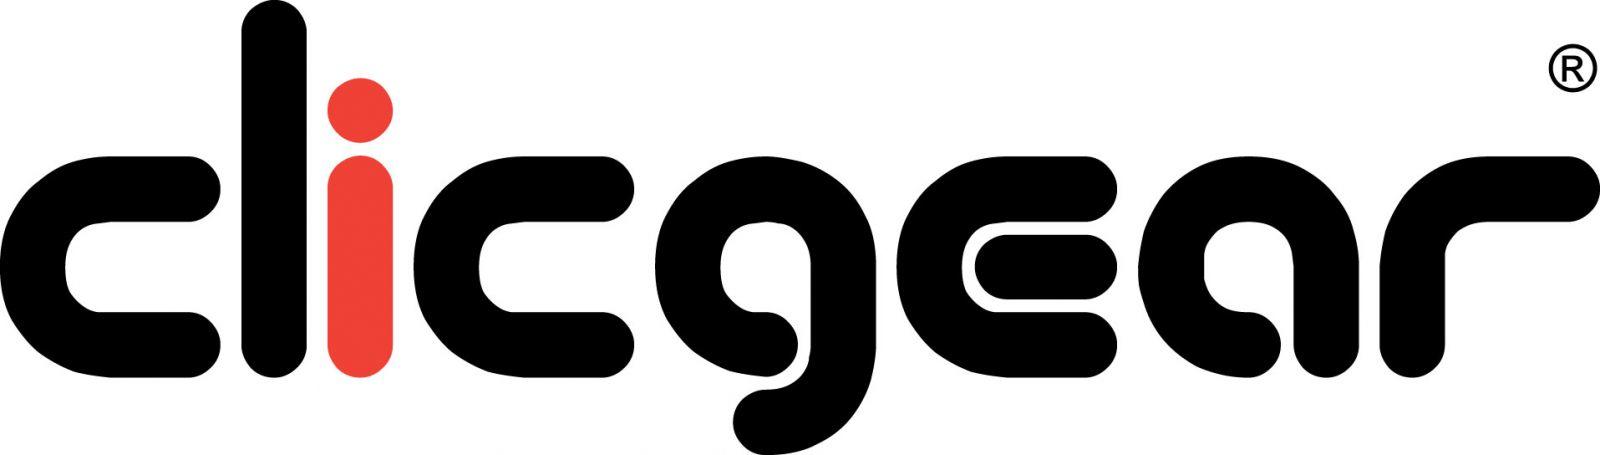 ClicGear logo